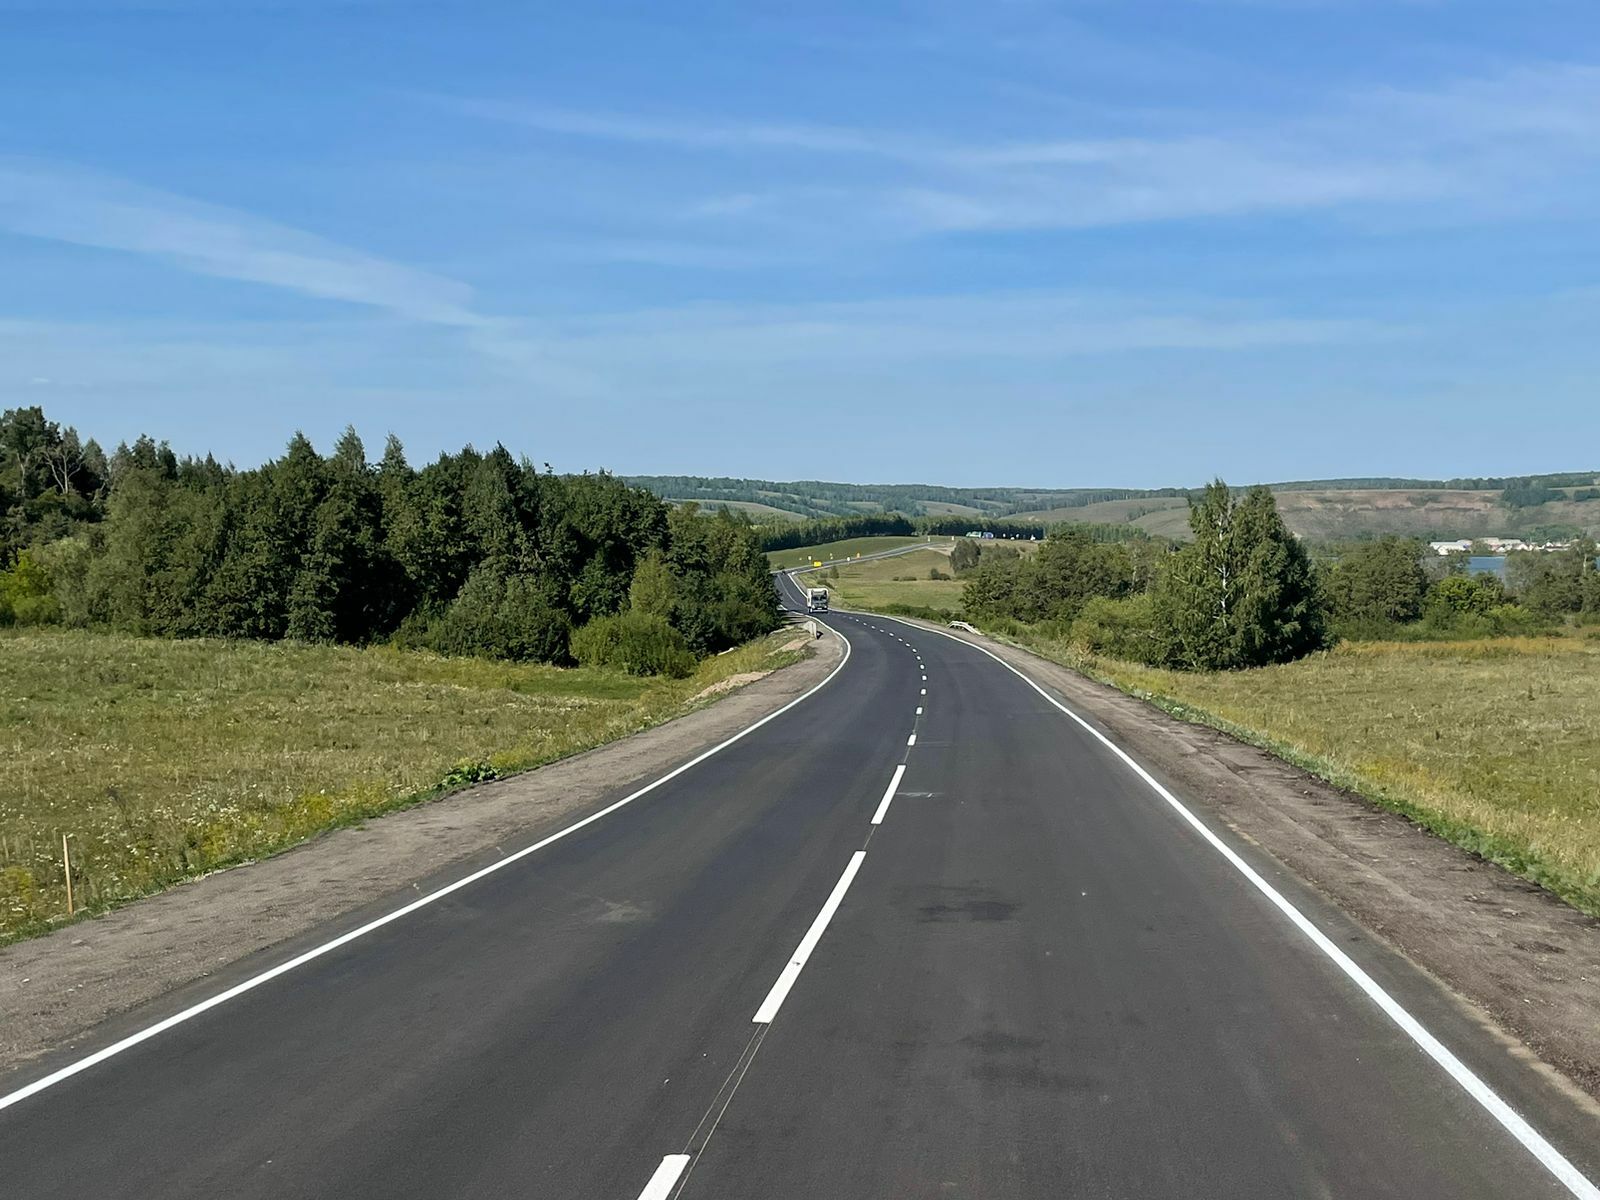 В Башкортостане отремонтировали пять участков дороги М-5 «Урал» - Чишмы - Аксеново - Киргиз-Мияки в рамках нацпроекта «Безопасные качественные дороги»